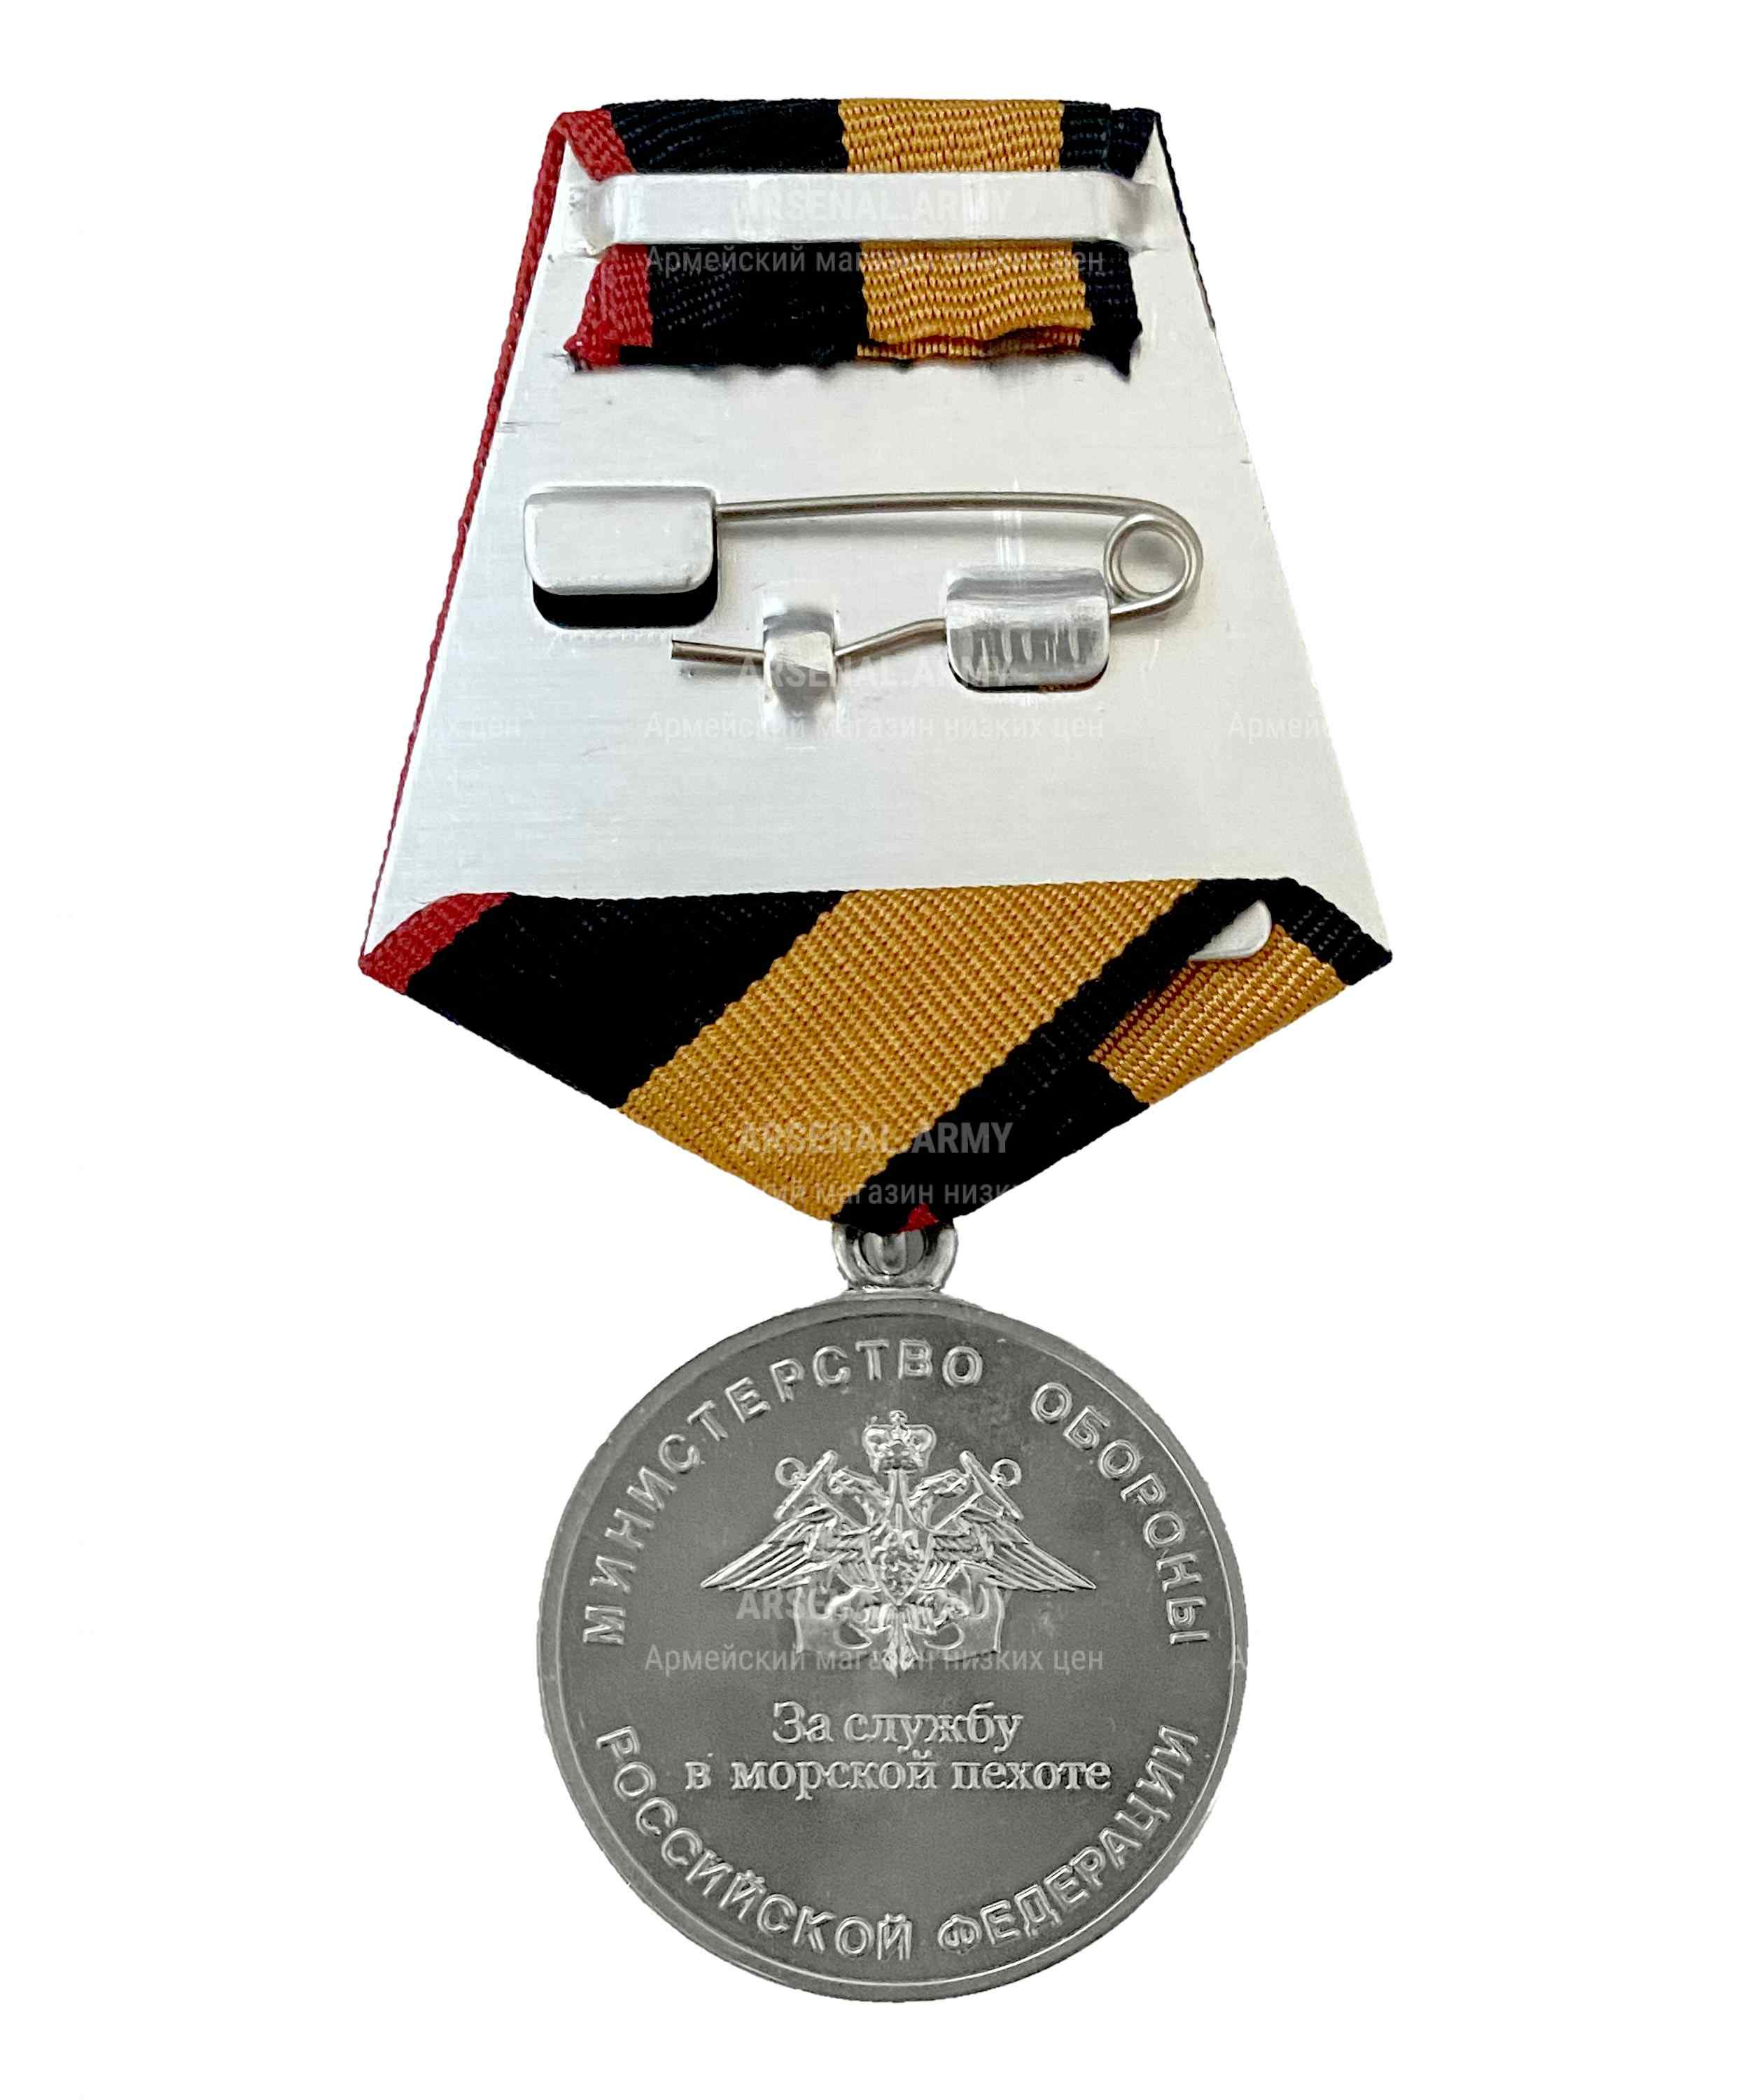 Медаль МО "За службу в морской пехоте" — 2